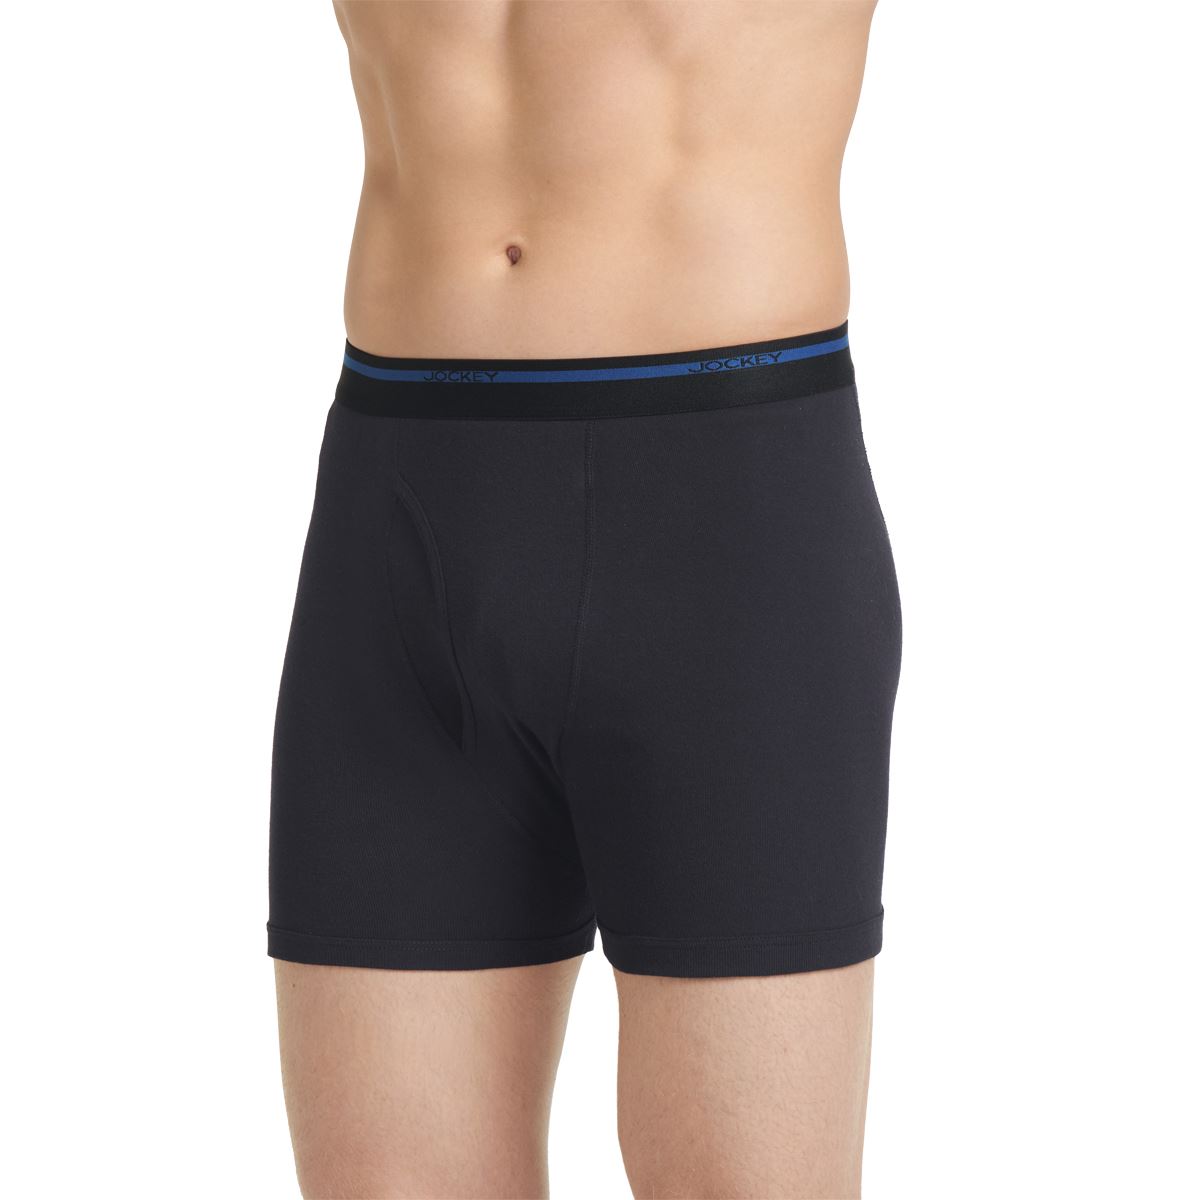 Jockey Men’s Underwear Lightweight Classic Boxer Brief – 3 Pack, Black, XL